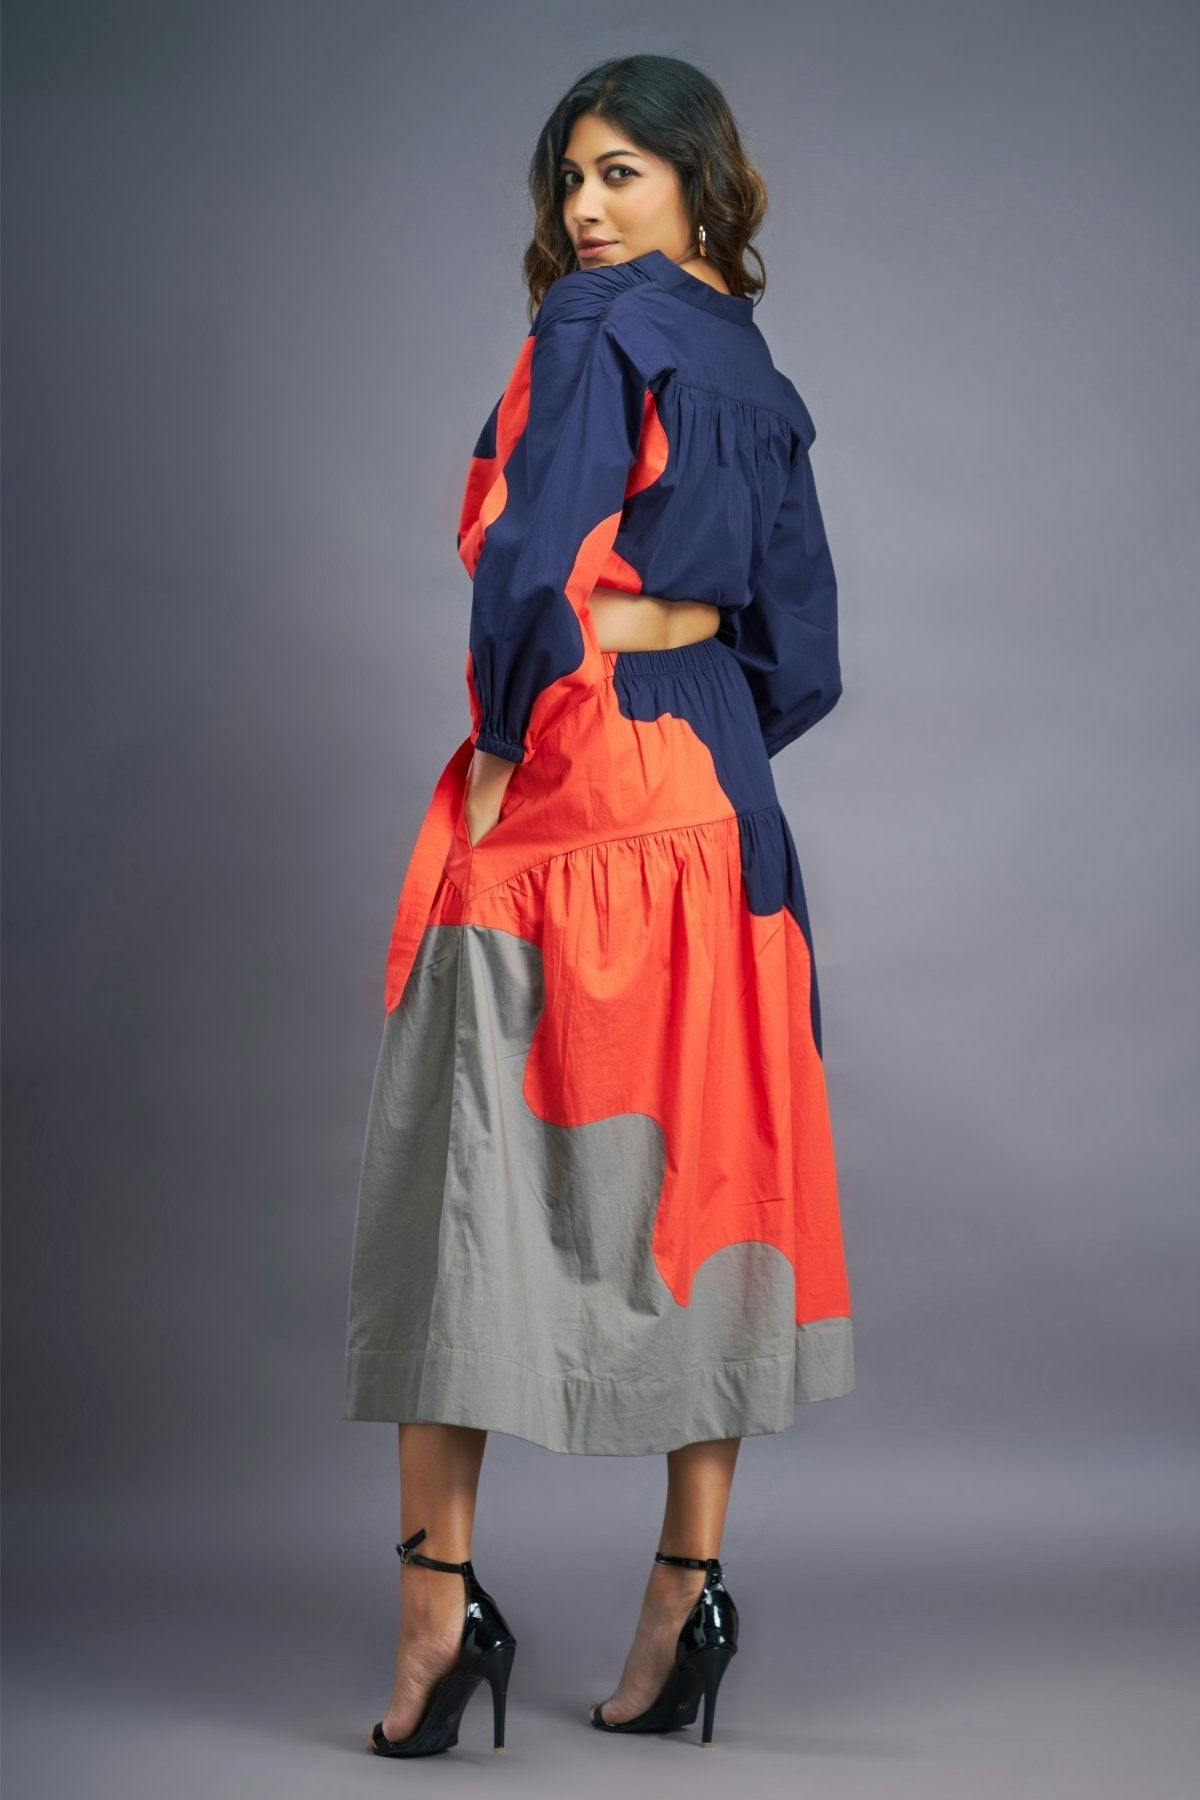 Thumbnail preview #2 for BB-1109-OG - Navy Blue Orange Shirt & Skirt Co-ord Set